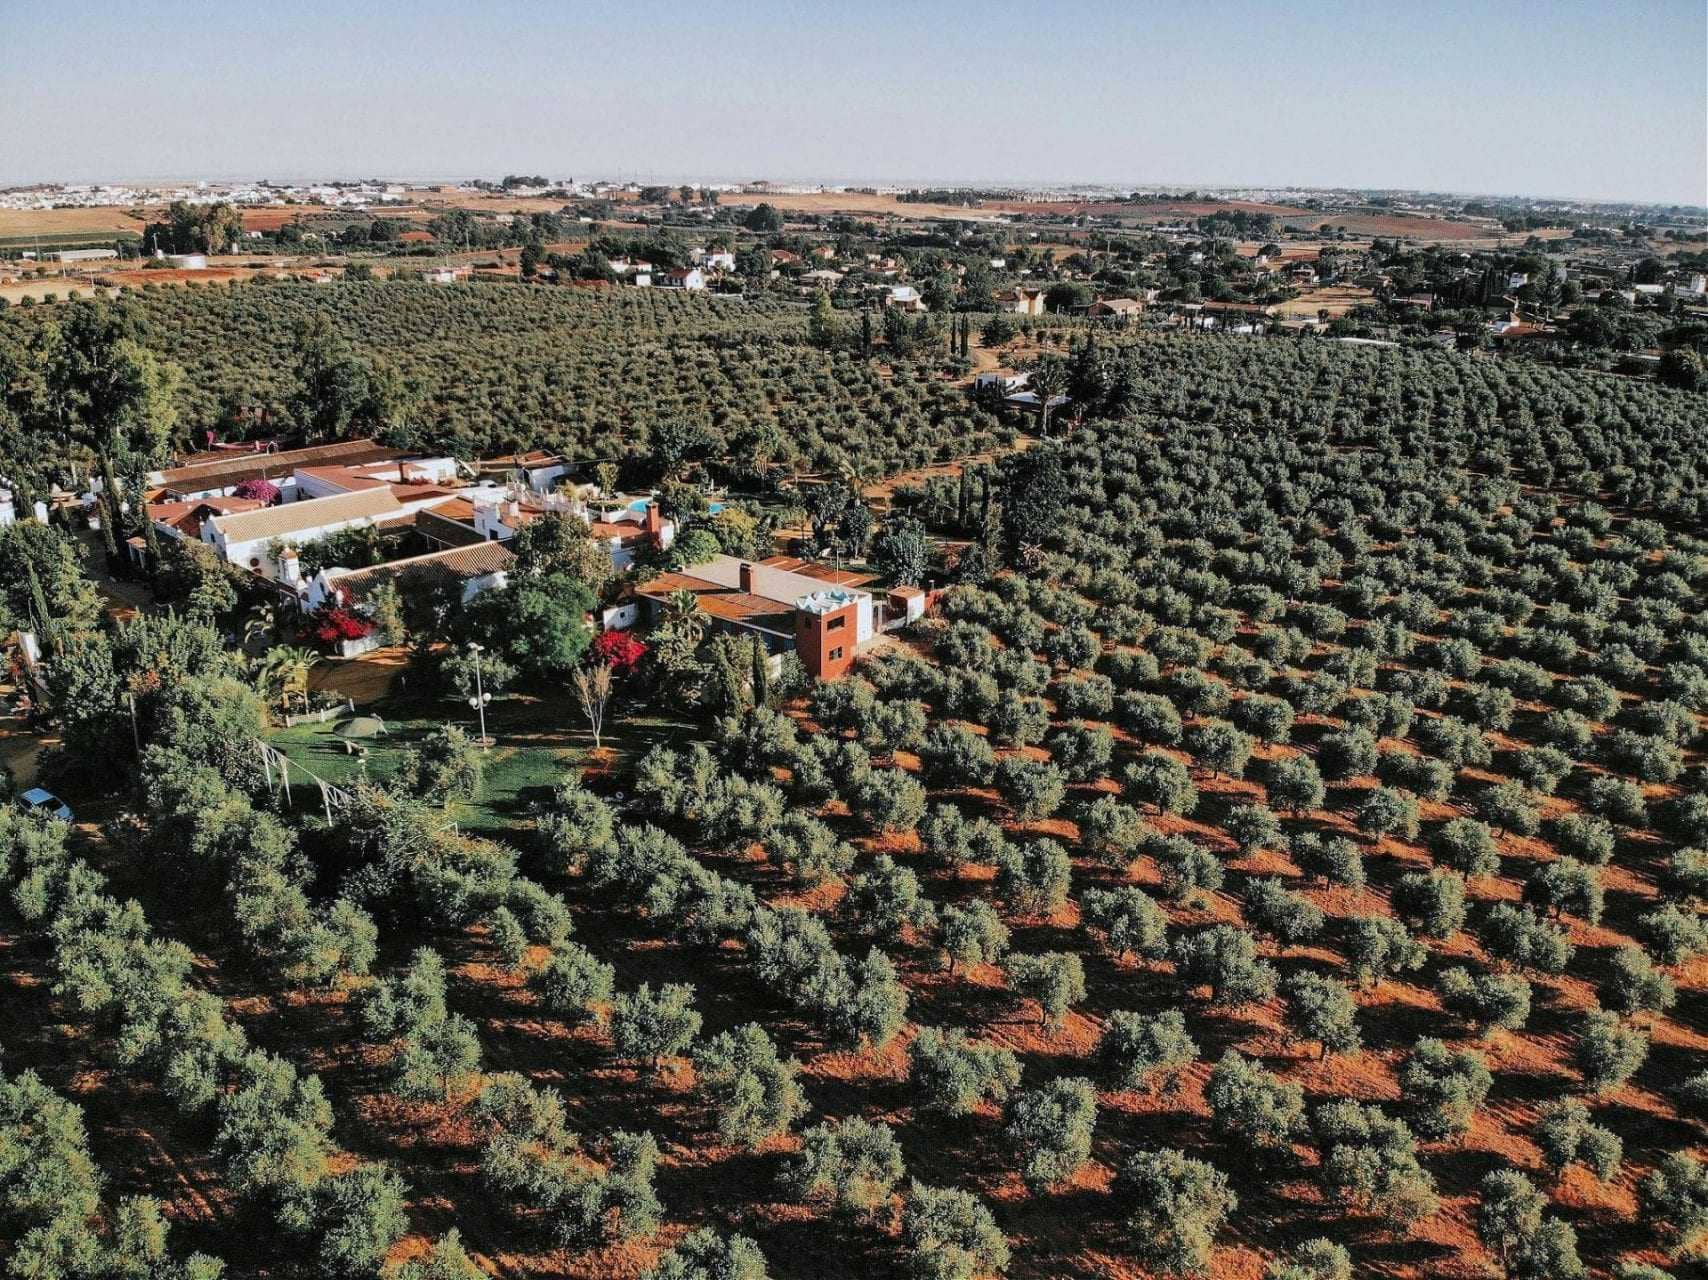 Business-Produktion-Welt-Klima-und-Covid-Sorgen-Landwirte-Vorbereitung-für-Ernte-Olivenöl-Zeiten